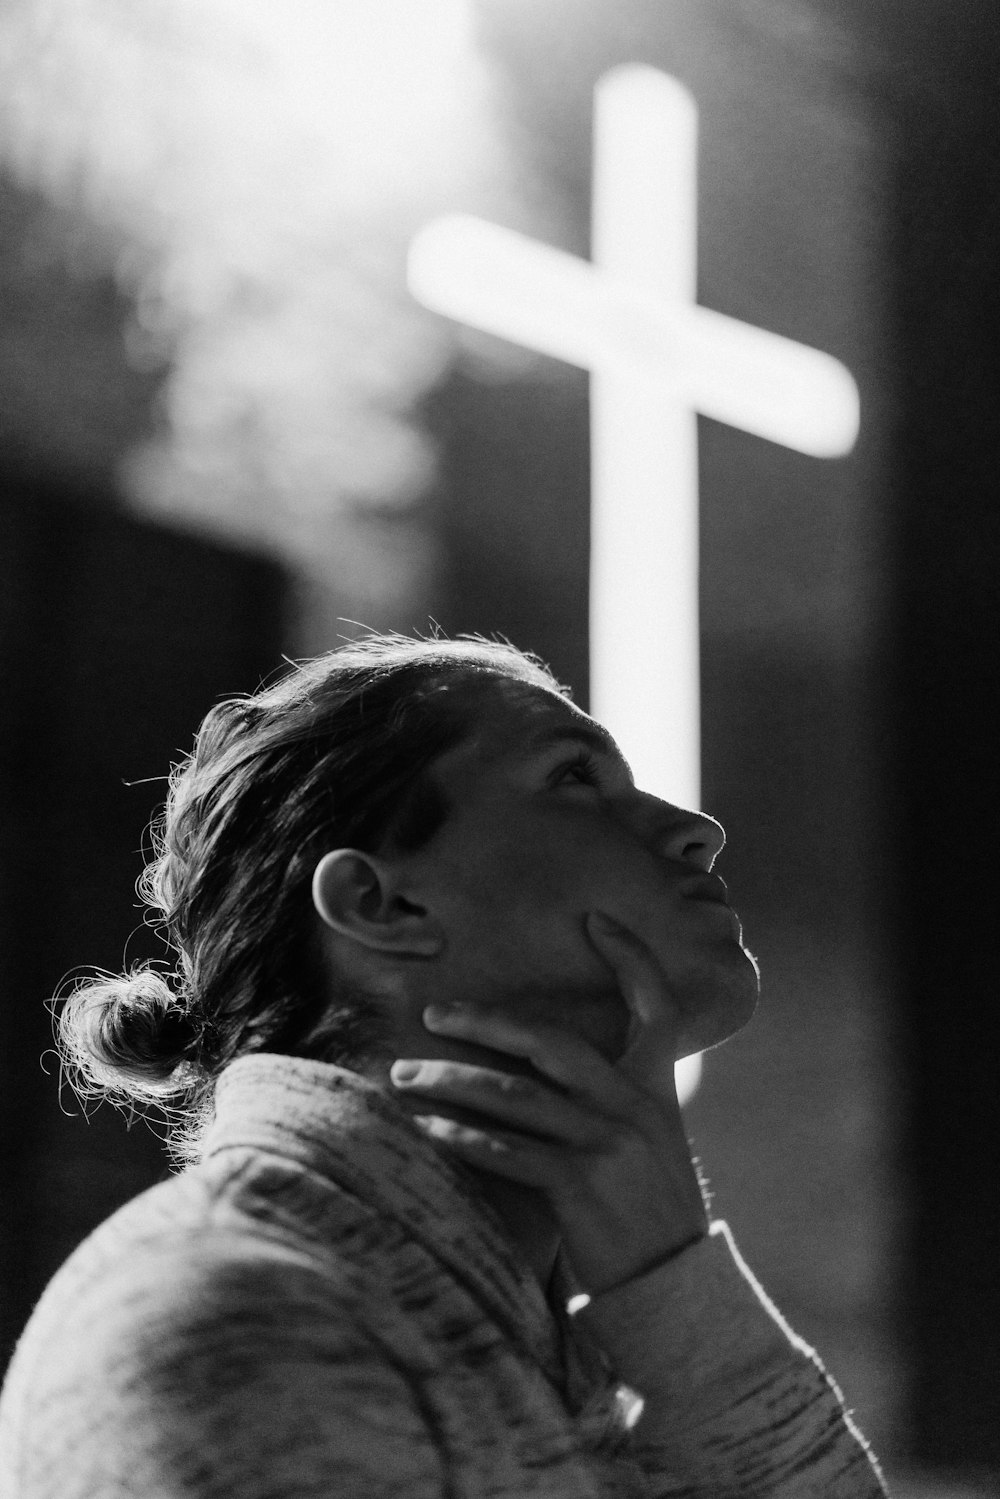 fotografia em tons de cinza da mulher que está perto da sinalização da cruz branca